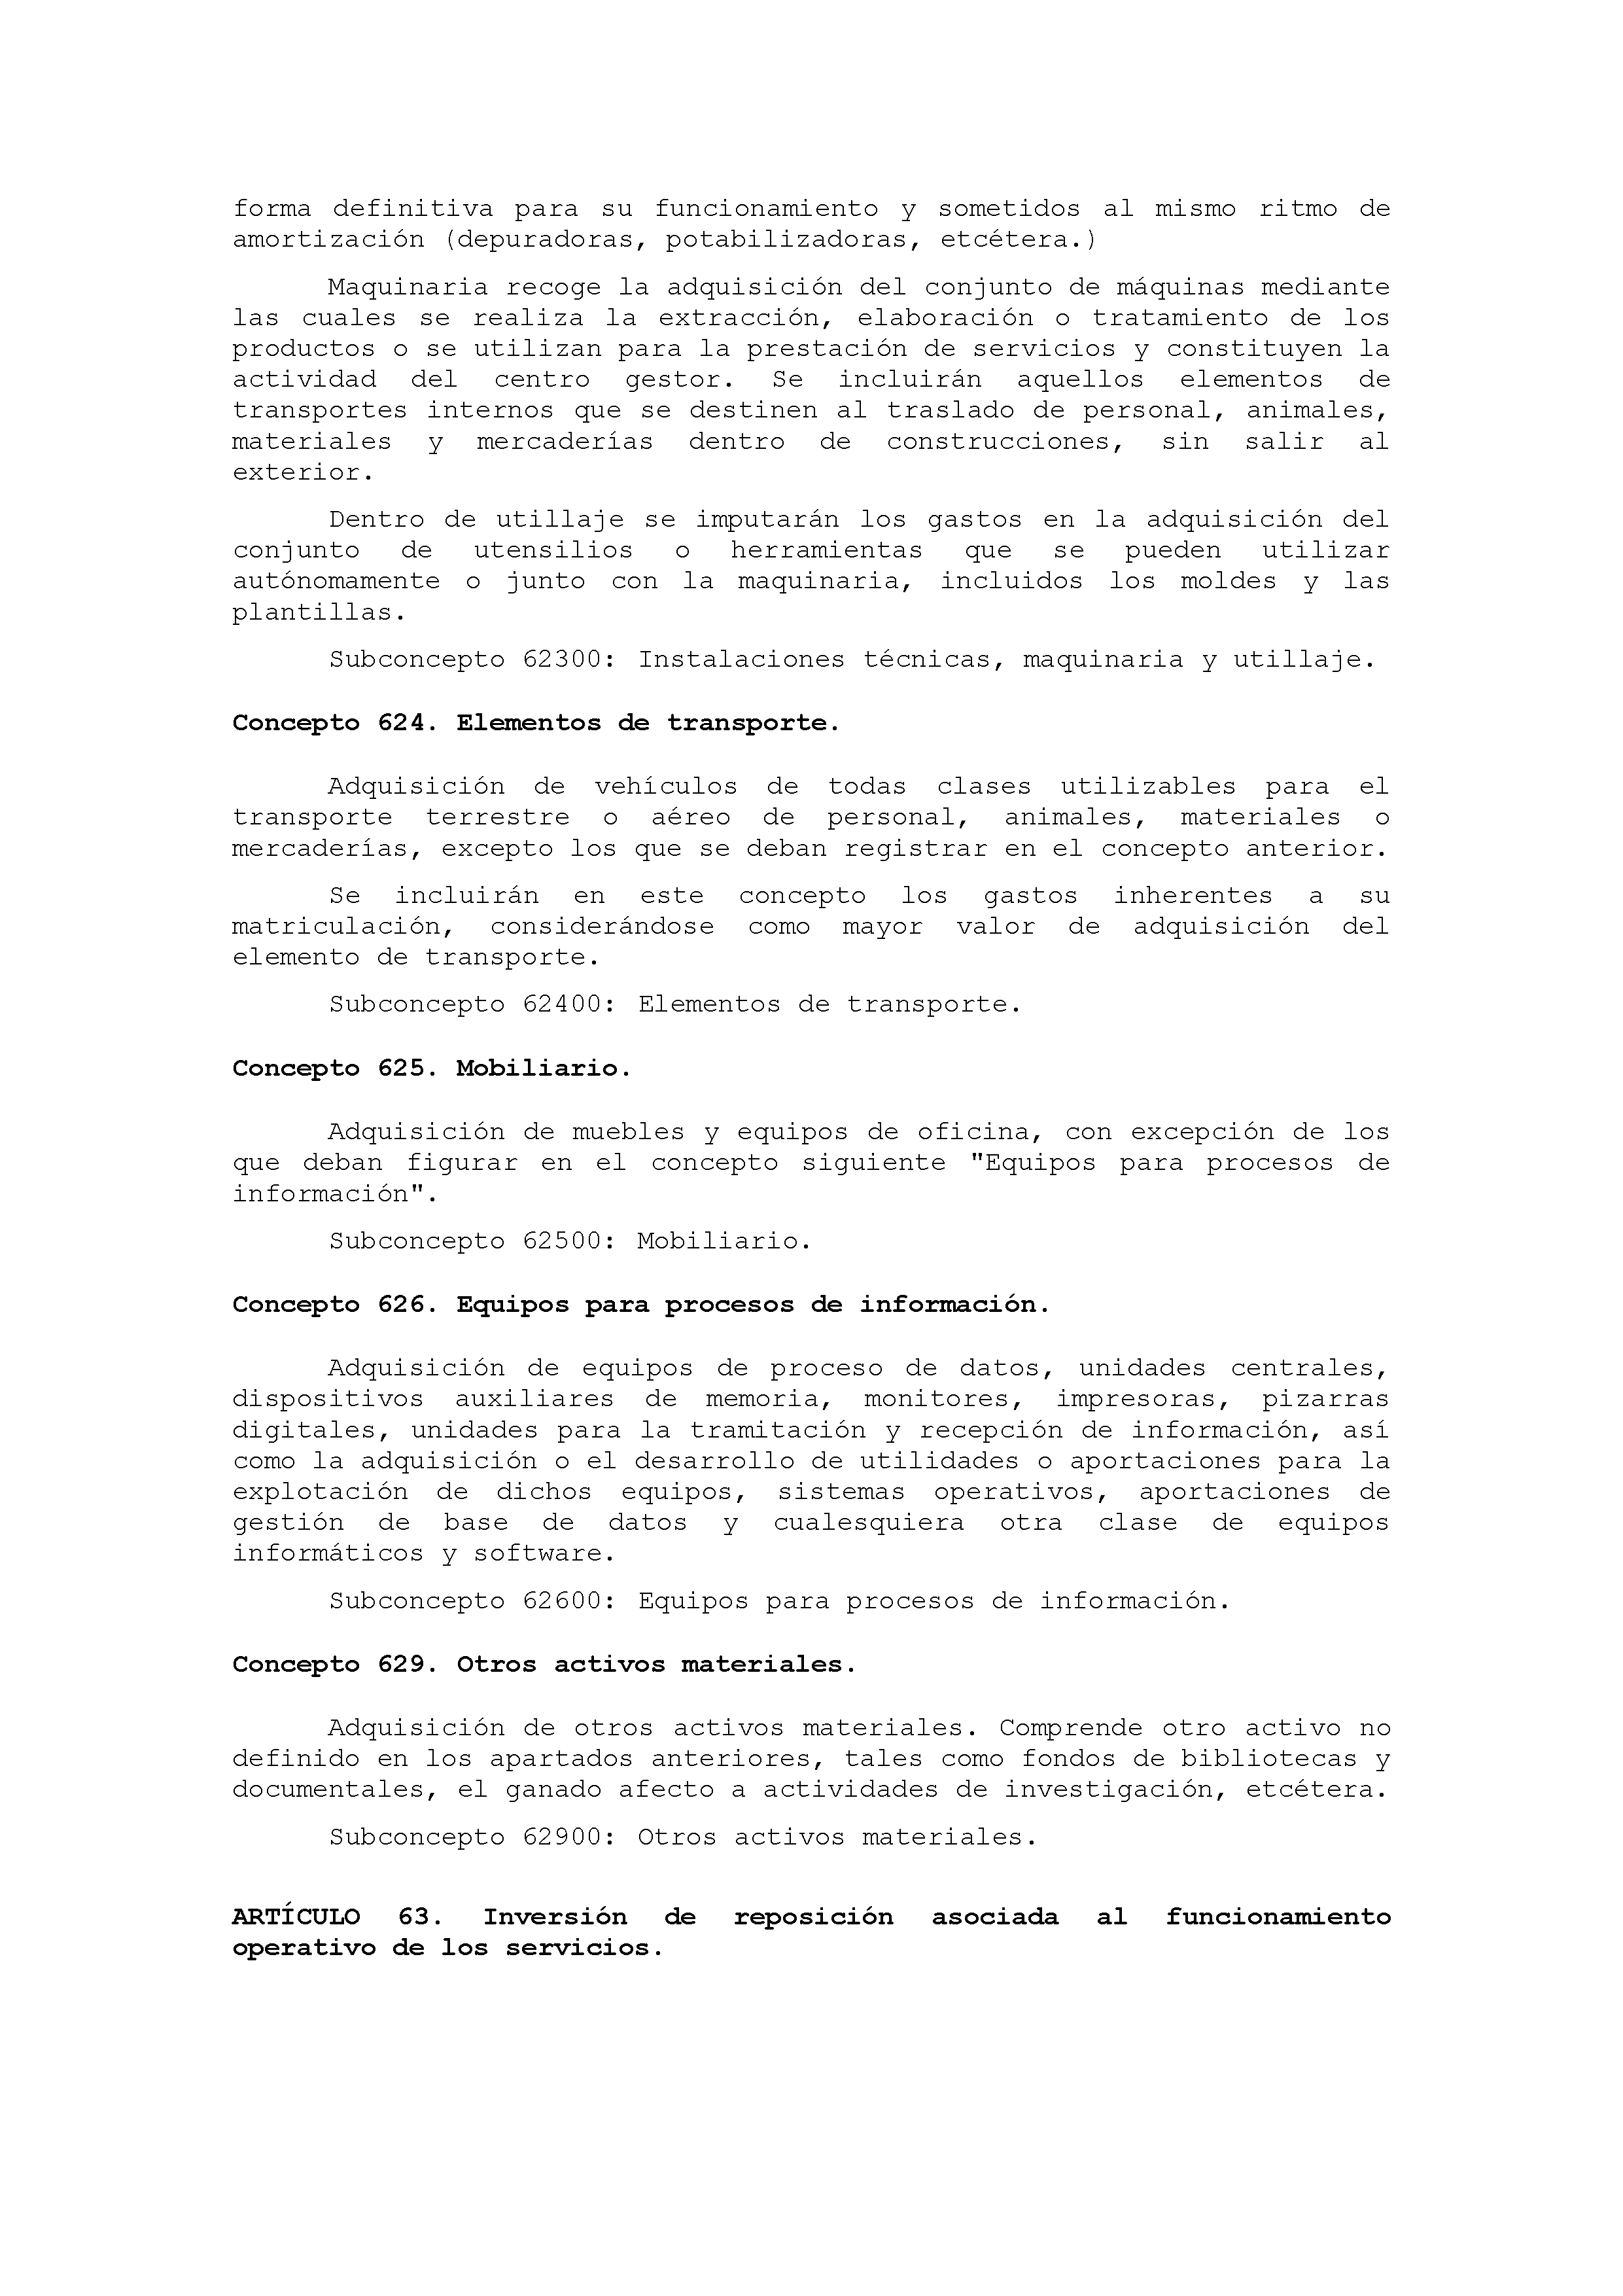 ANEXO IX CÓDIGO DE LA CLASIFICACIÓN ECONÓMICA DE LOS GASTOS PÚBLICOS Pag 37